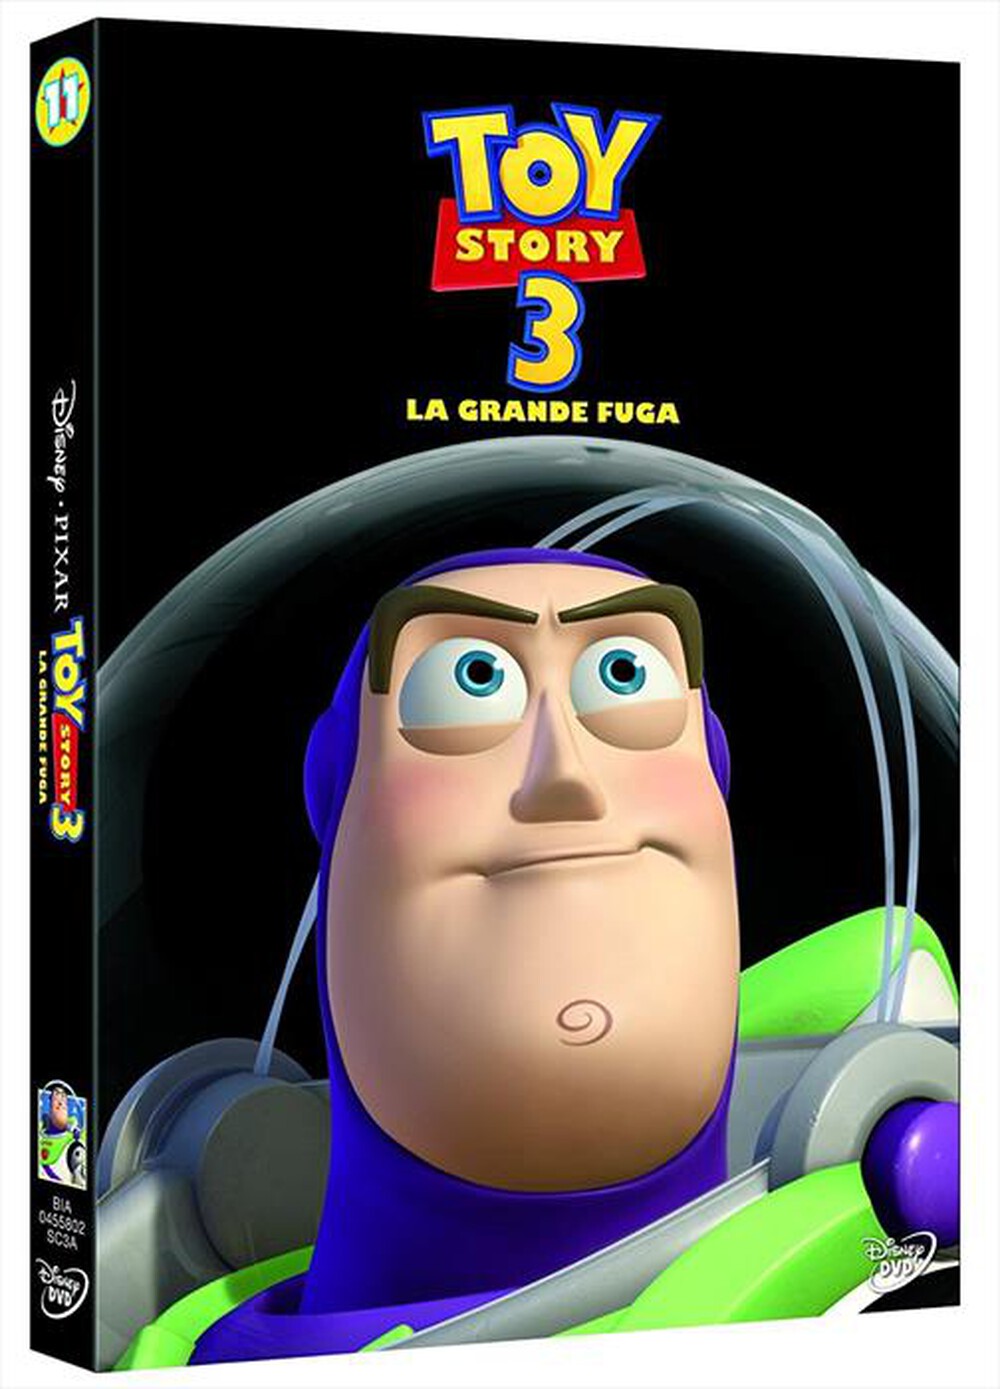 "EAGLE PICTURES - Toy Story 3 - La Grande Fuga (SE)"